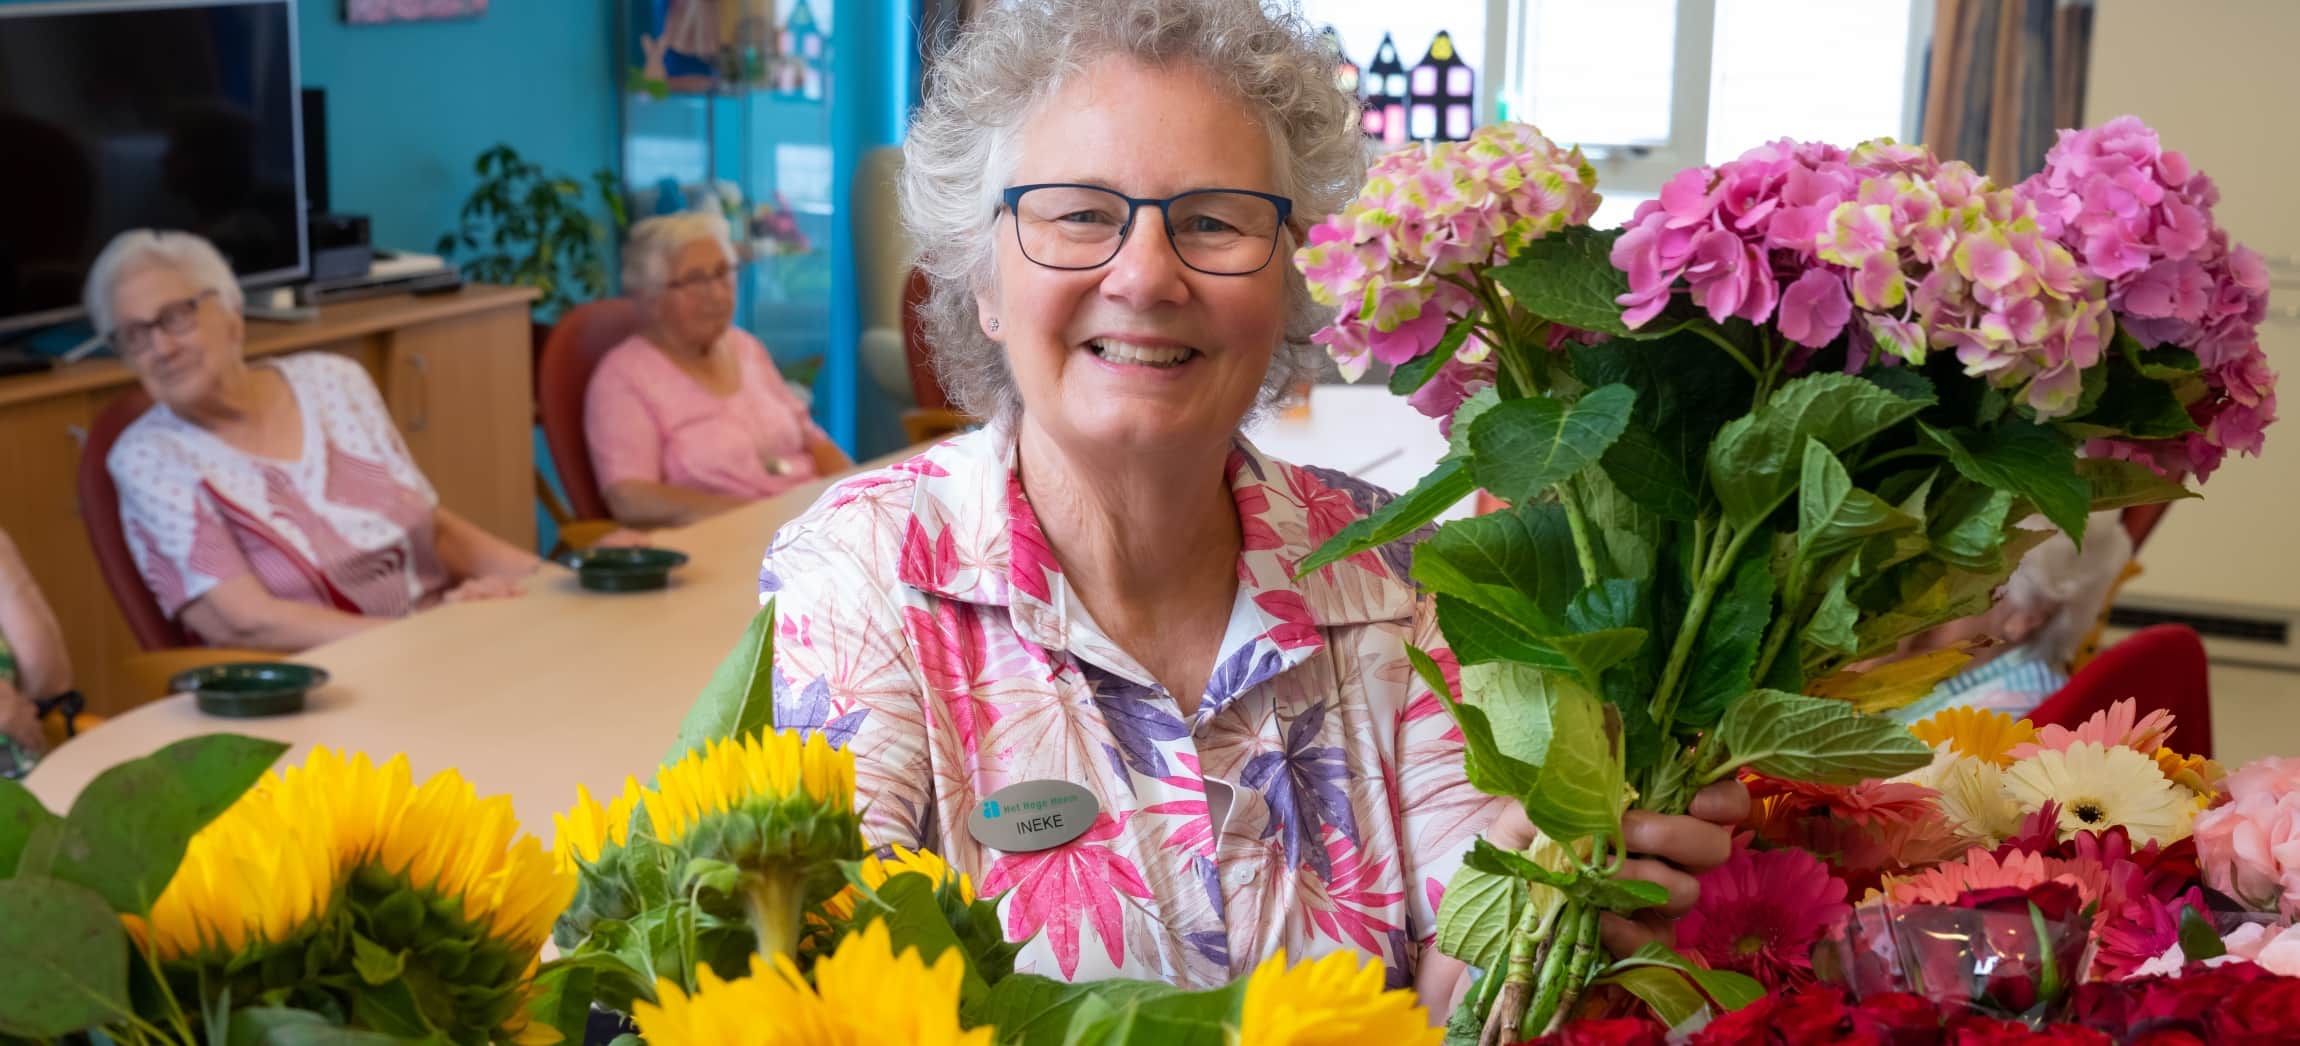 Vrijwilliger Ineke zorgt voor een fleurige dagbesteding in verpleeghuis Het Hoge Heem in Uithoorn